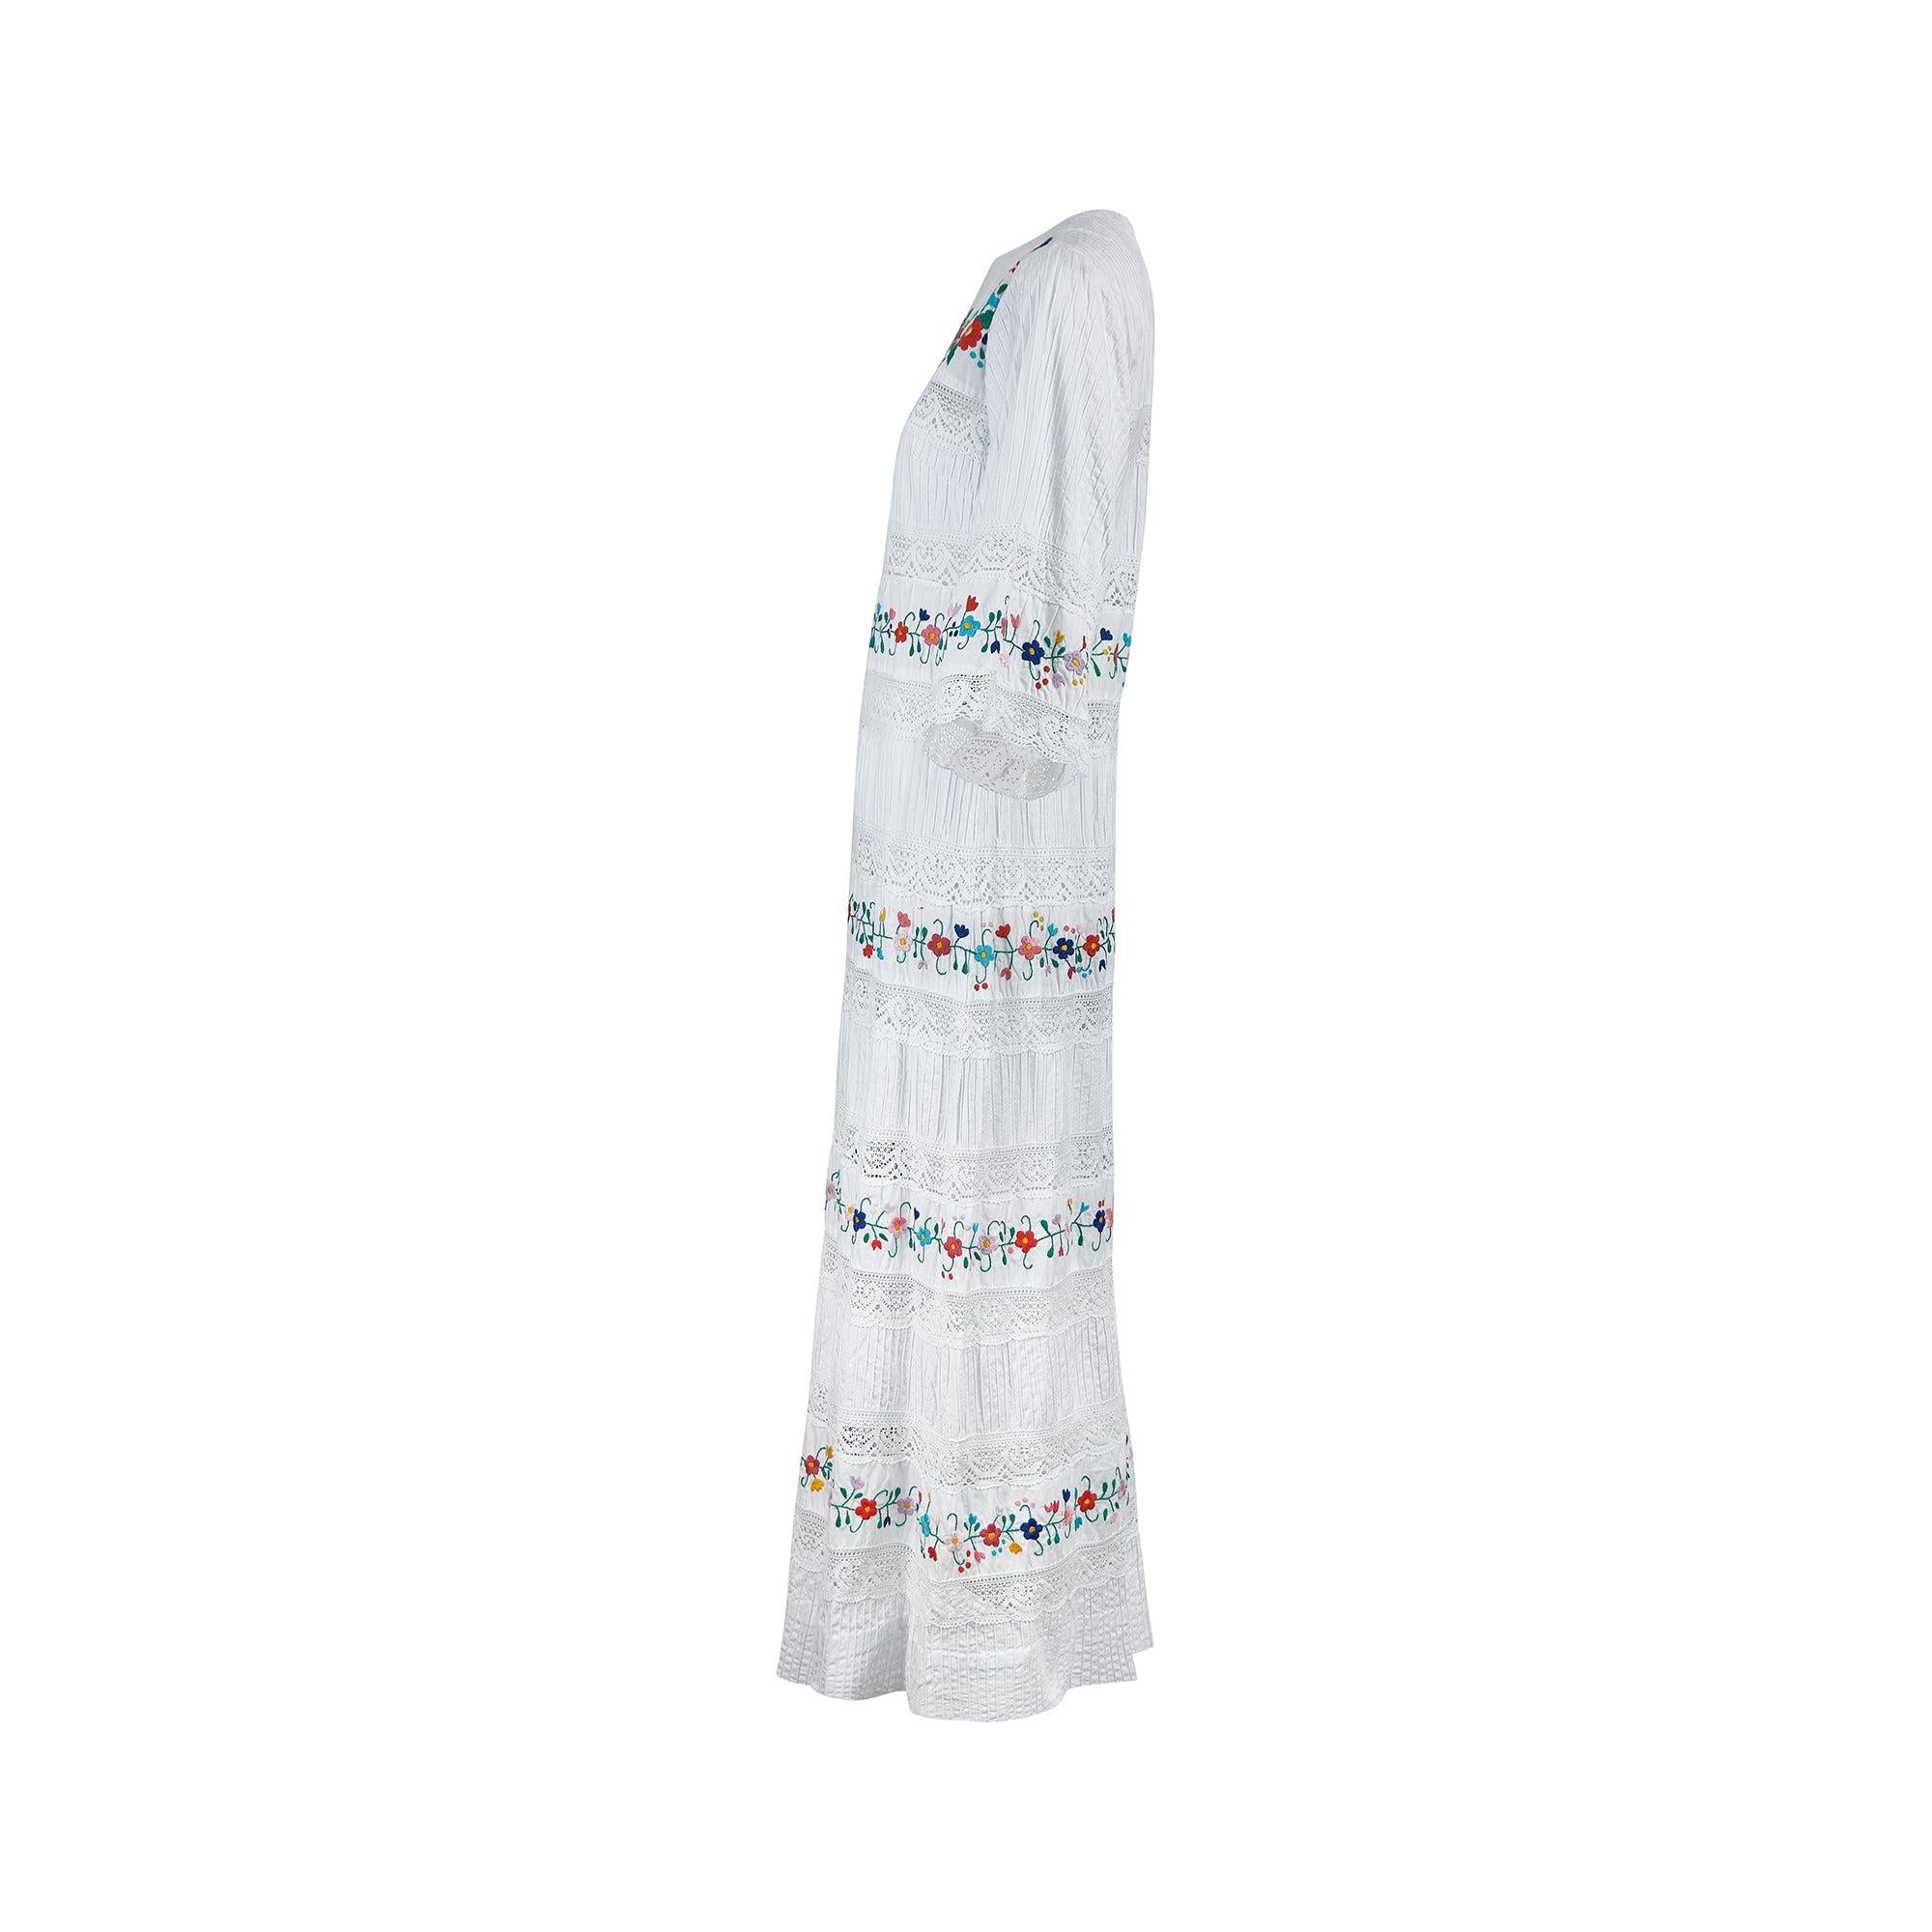 Dieses knöchellange Hochzeitskleid von Yolanda aus den 1970er Jahren stammt aus Mexiko und weist viele Merkmale des traditionellen mexikanischen Designs auf. Es ist in einer luftigen A-Linien-Silhouette aus weißer Baumwolle geschneidert und über und